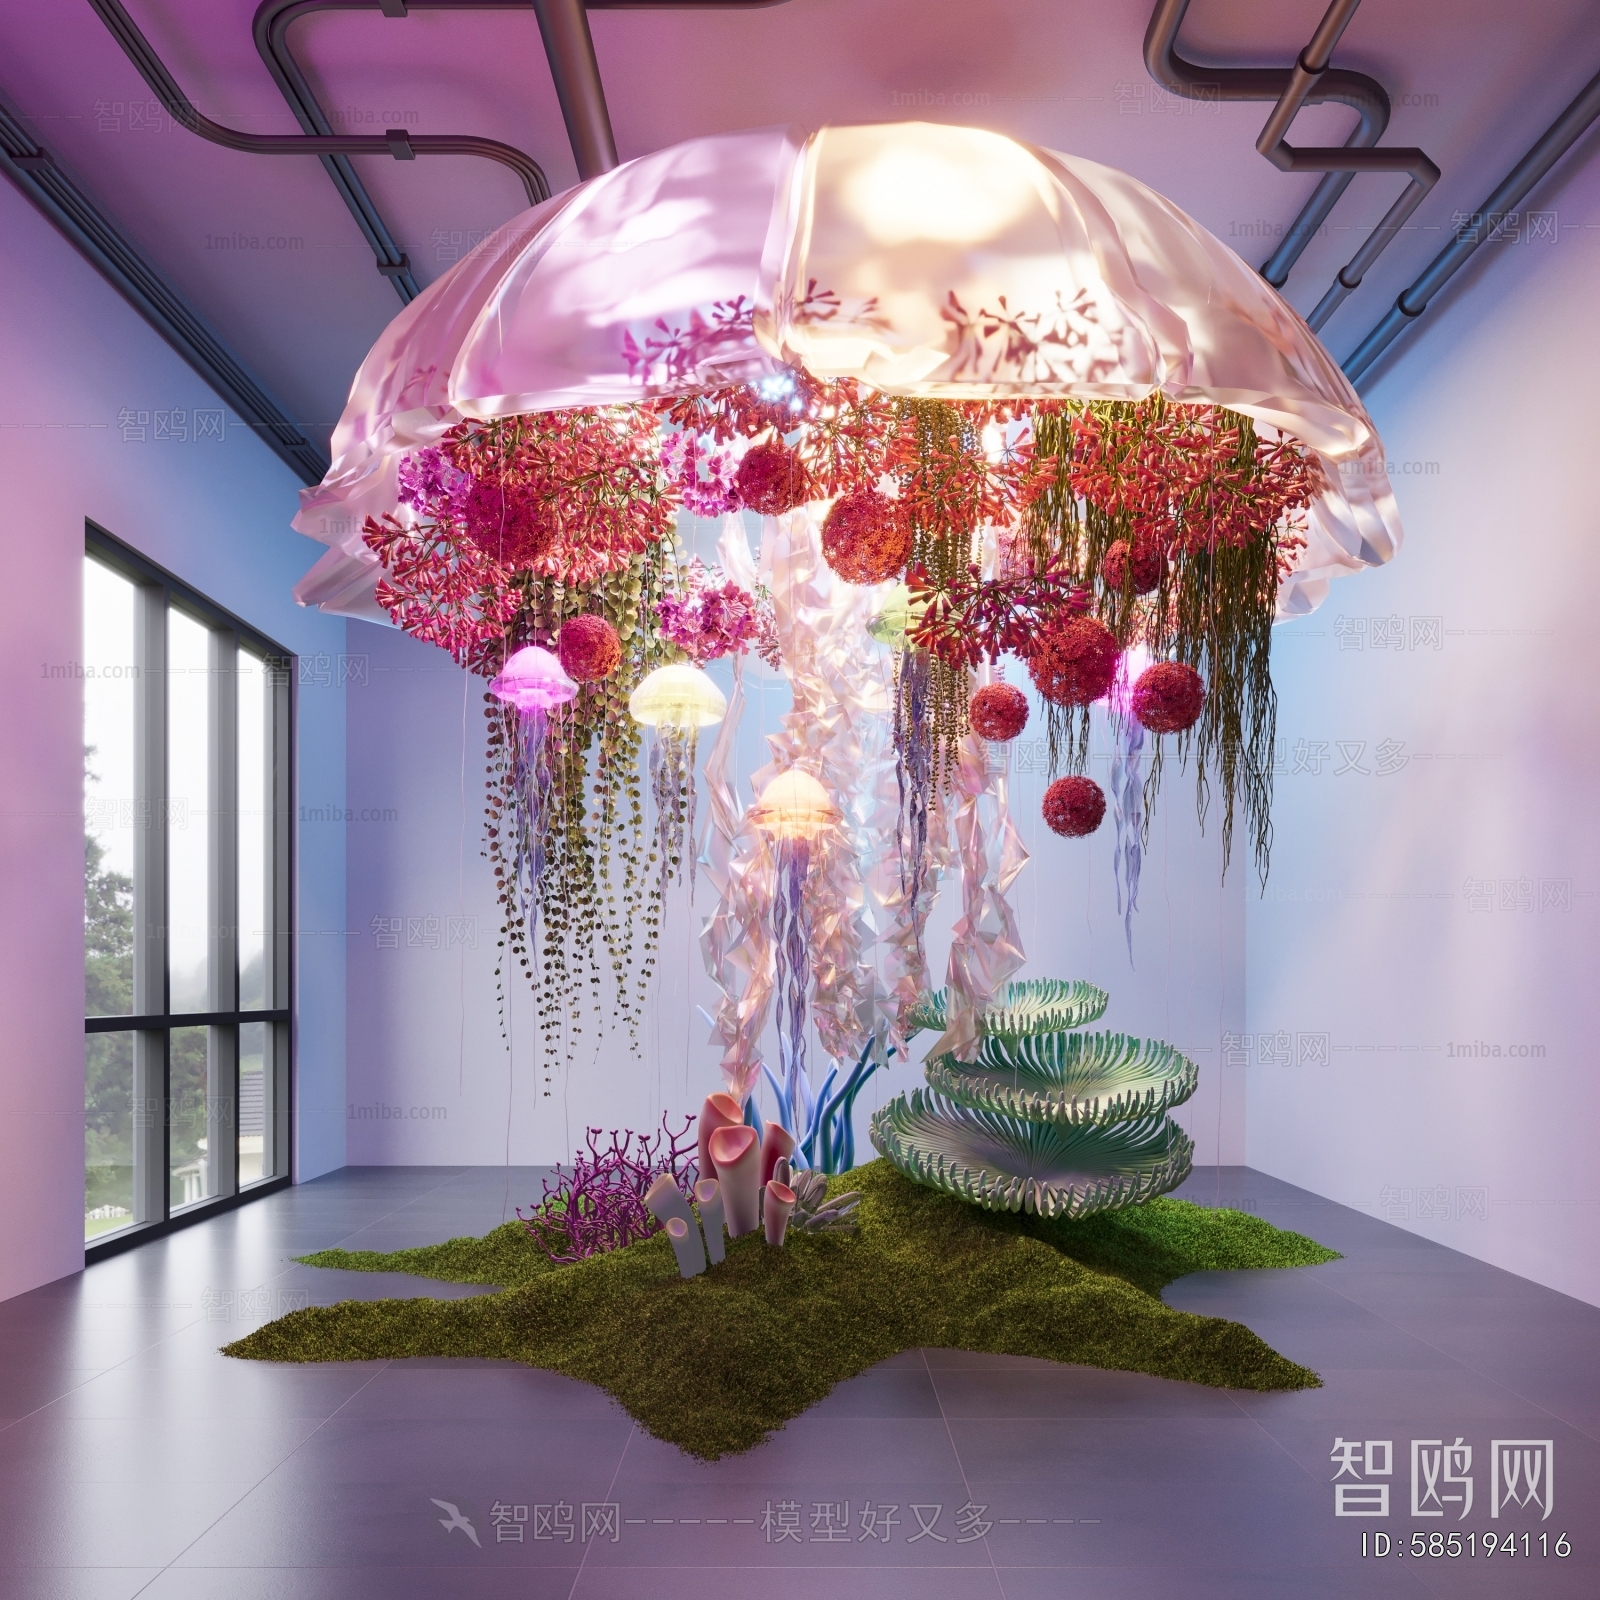 现代室内水母爬藤装置造景3D模型下载